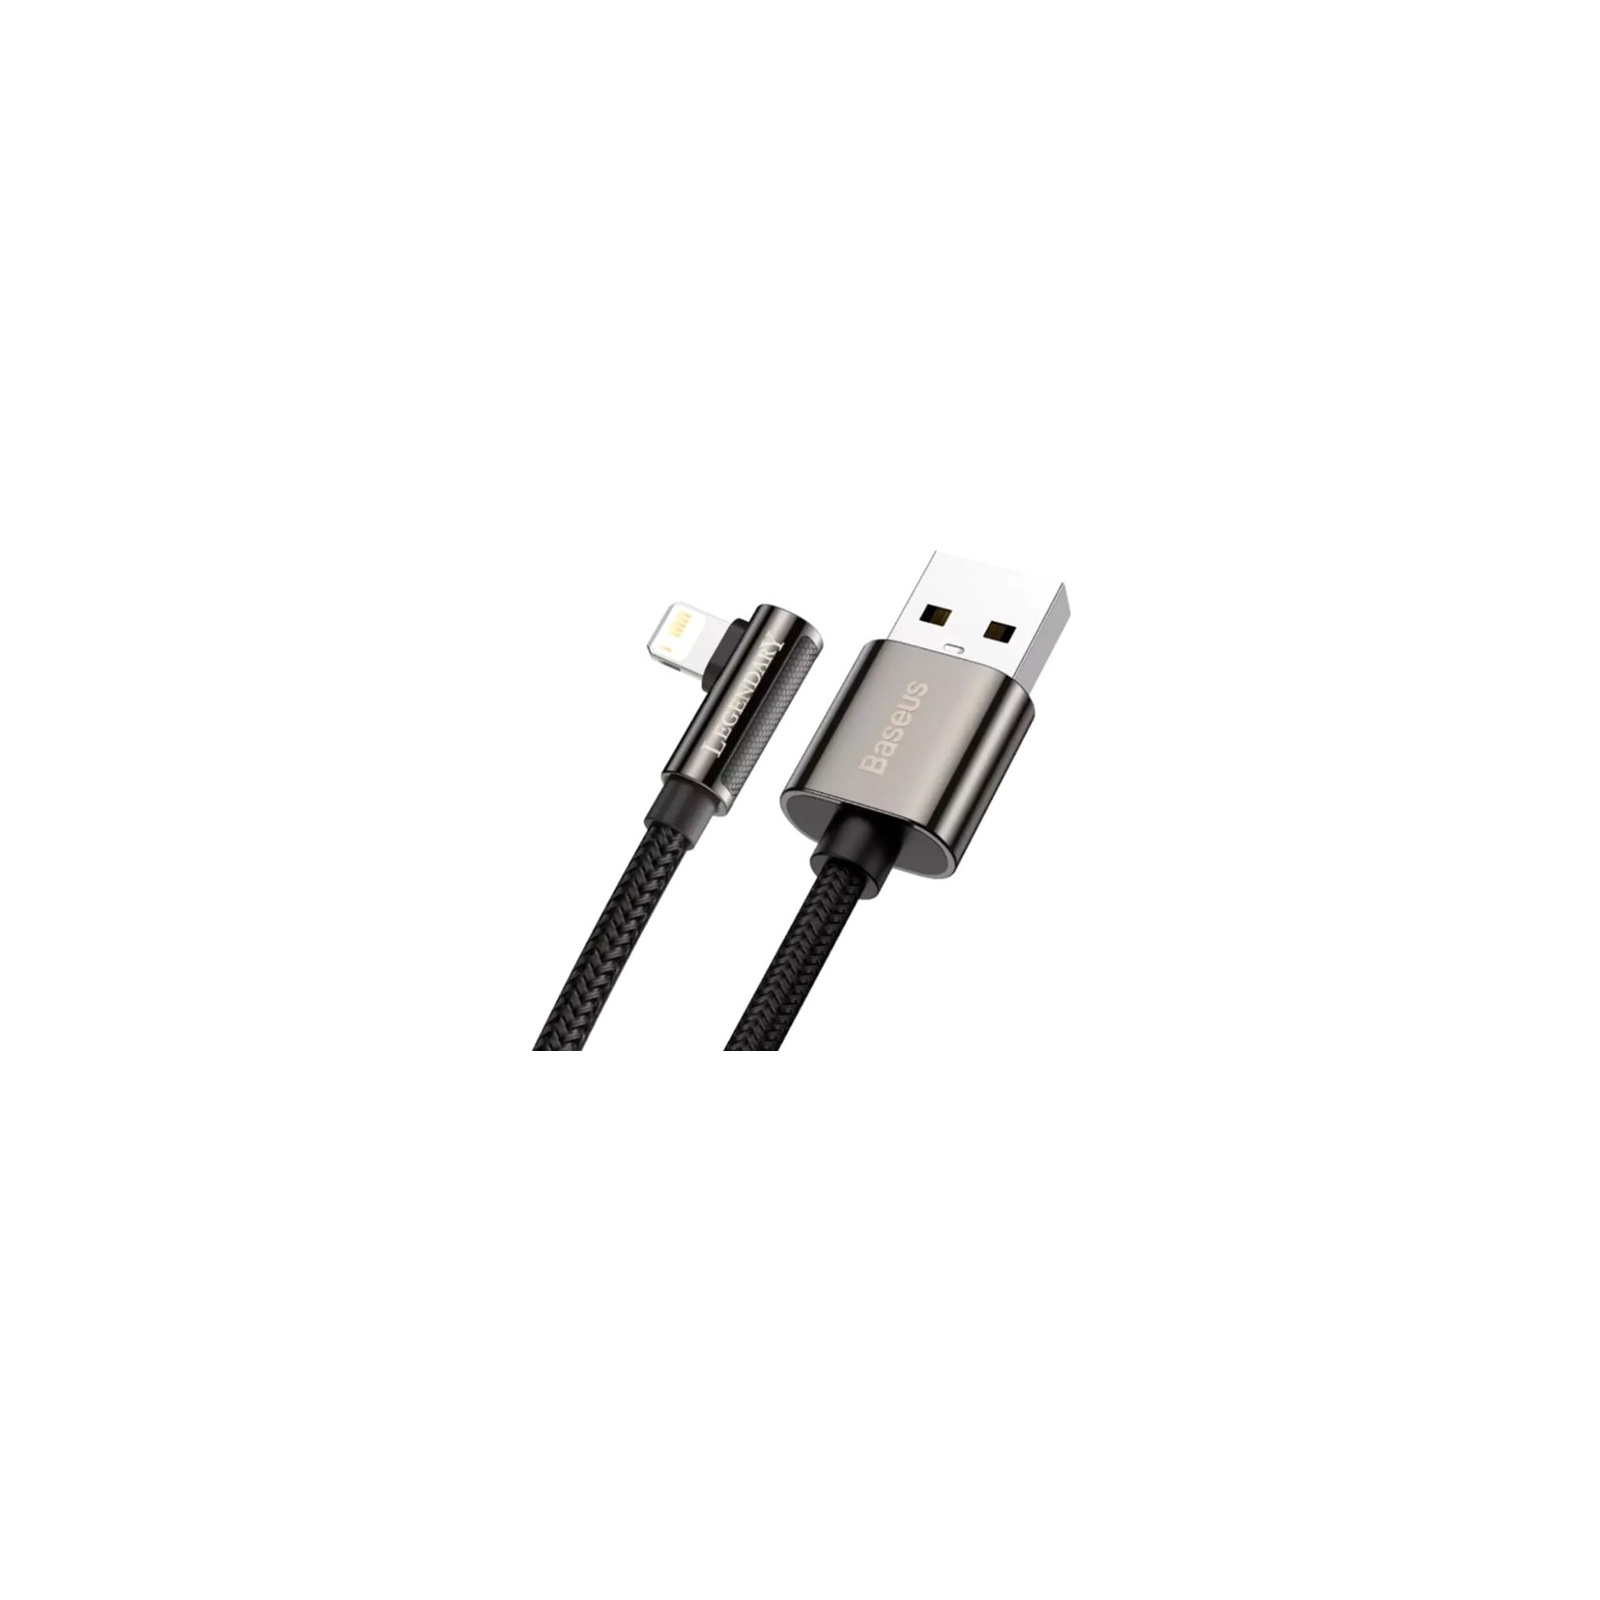 Дата кабель USB 2.0 AM to Lightning 1.0m CALCS 2.4A 90 Legend Series Elbow Black Baseus (CALCS-01) изображение 2